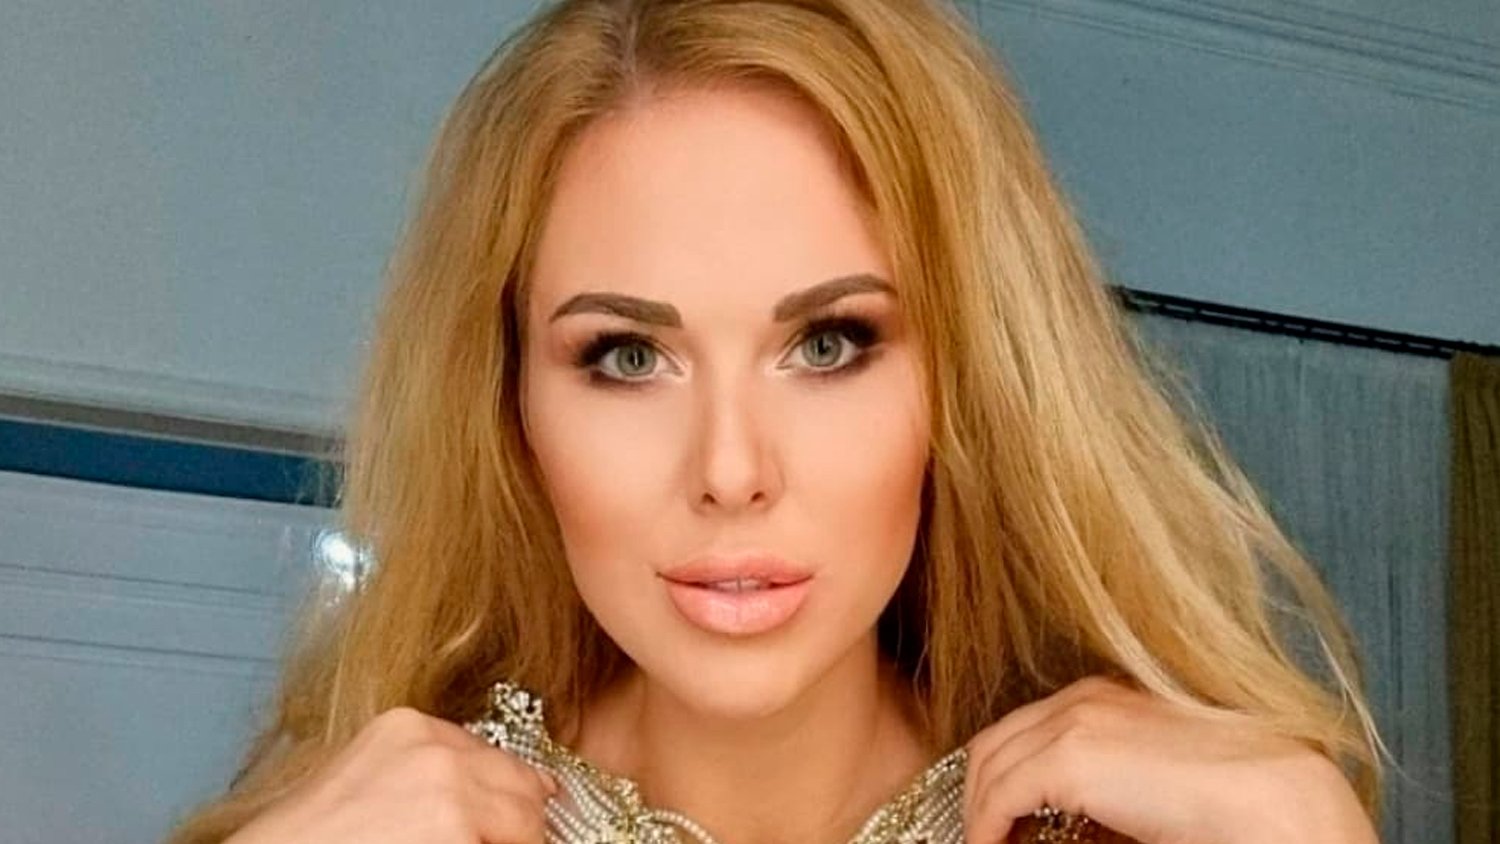 SHOT: блогер Мася Шпак задолжала 3,5 млн налоговой